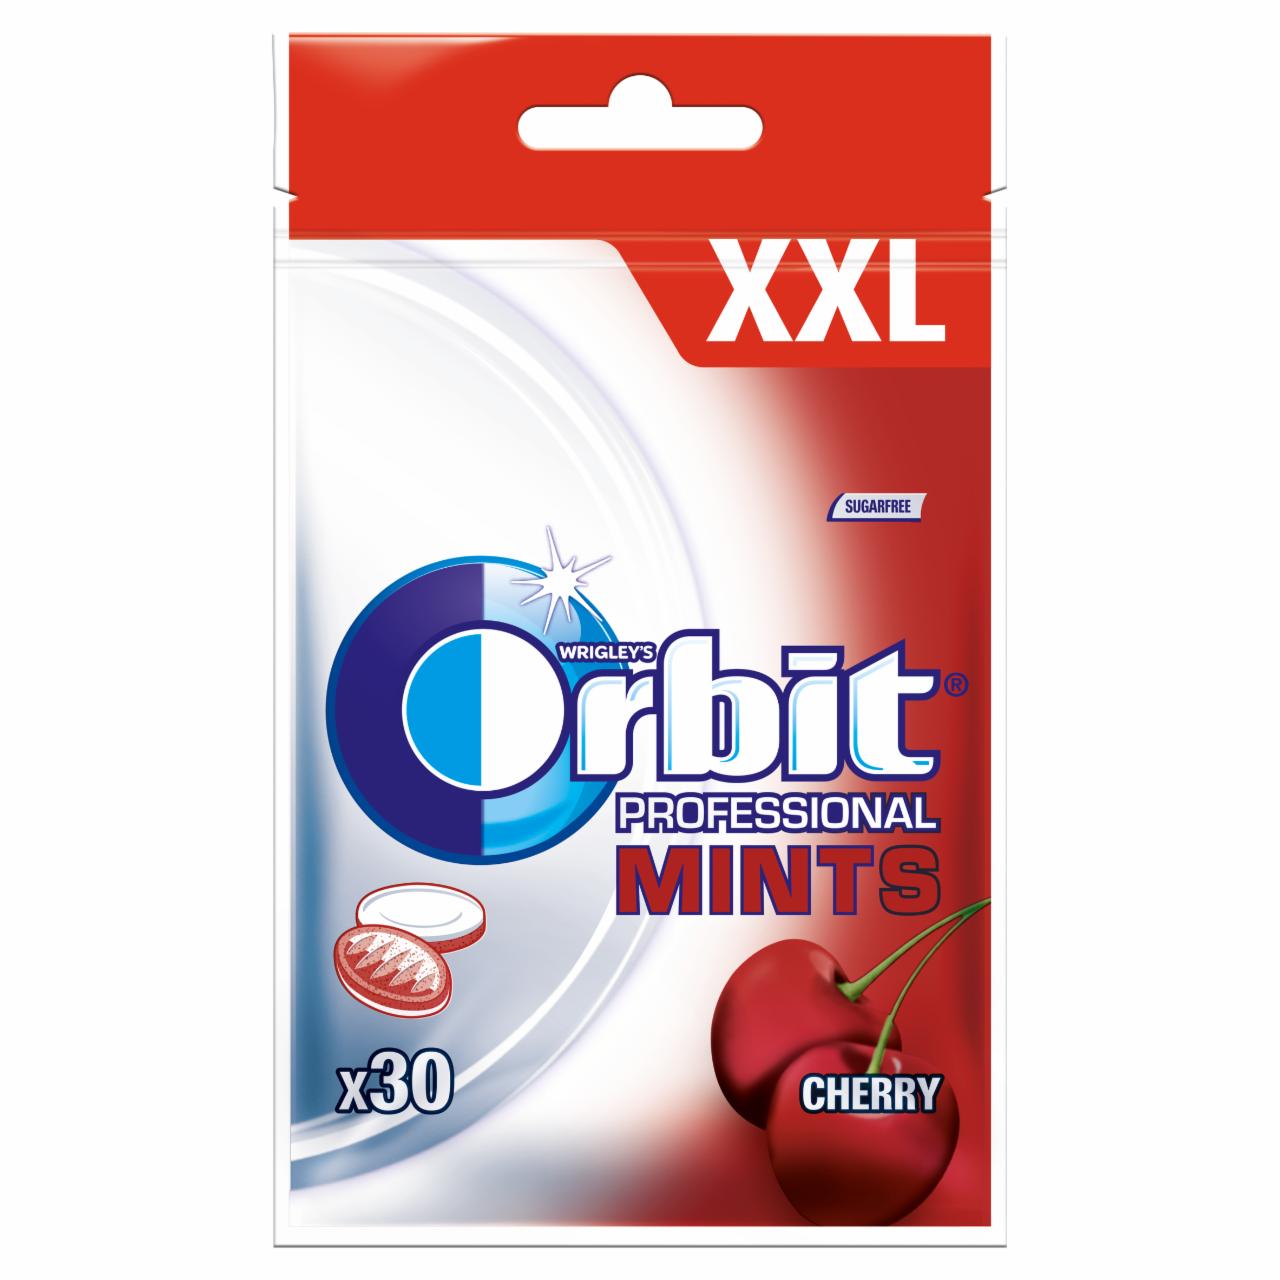 Zdjęcia - Orbit Professional Mints Cherry XXL Cukierki bez cukru 30 g (30 cukierków)